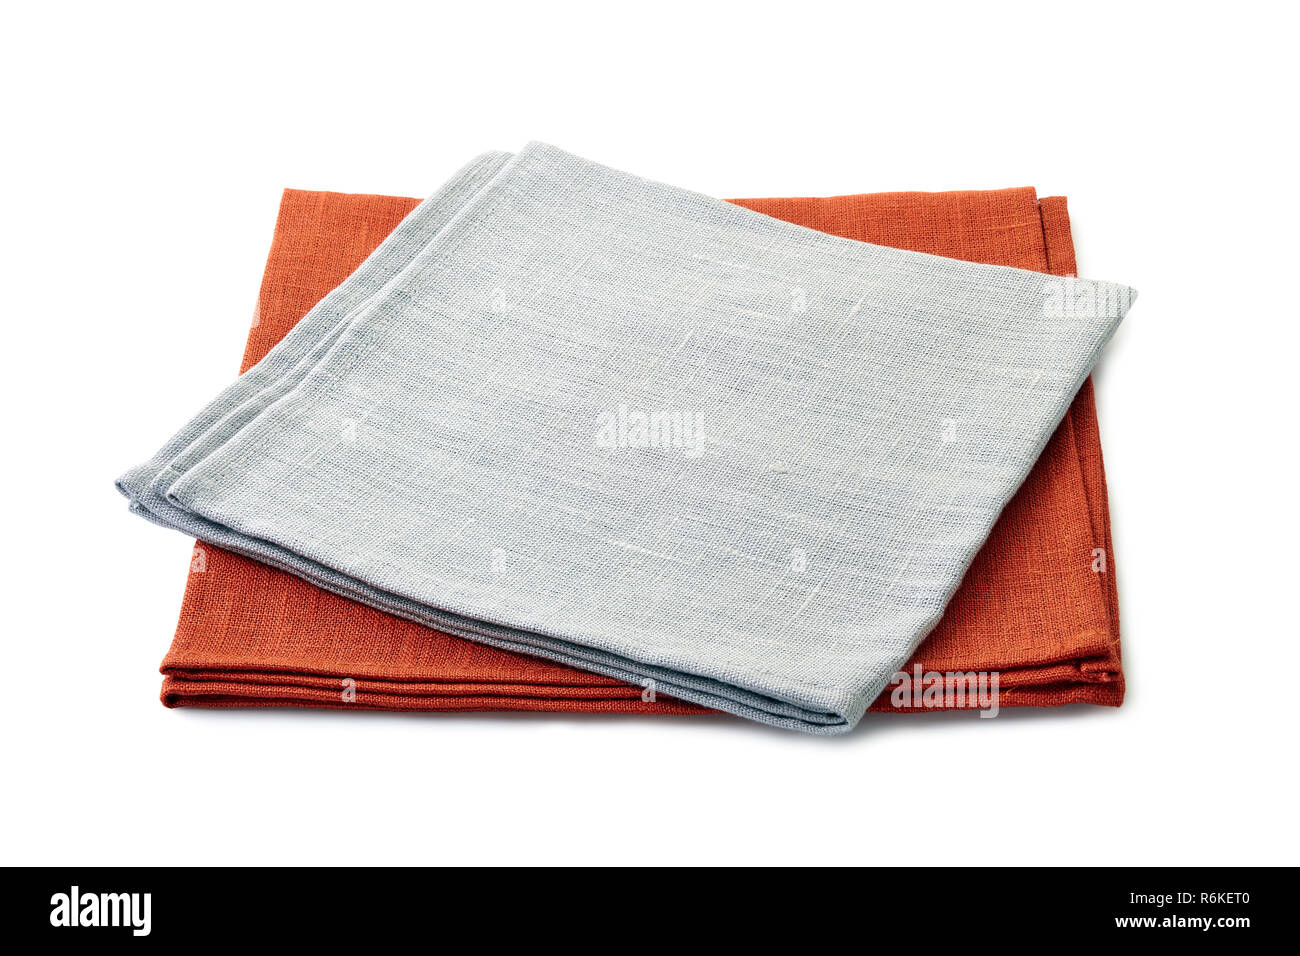 Ripiegate grigio e marrone tovaglioli tessili impilati su sfondo bianco Foto Stock